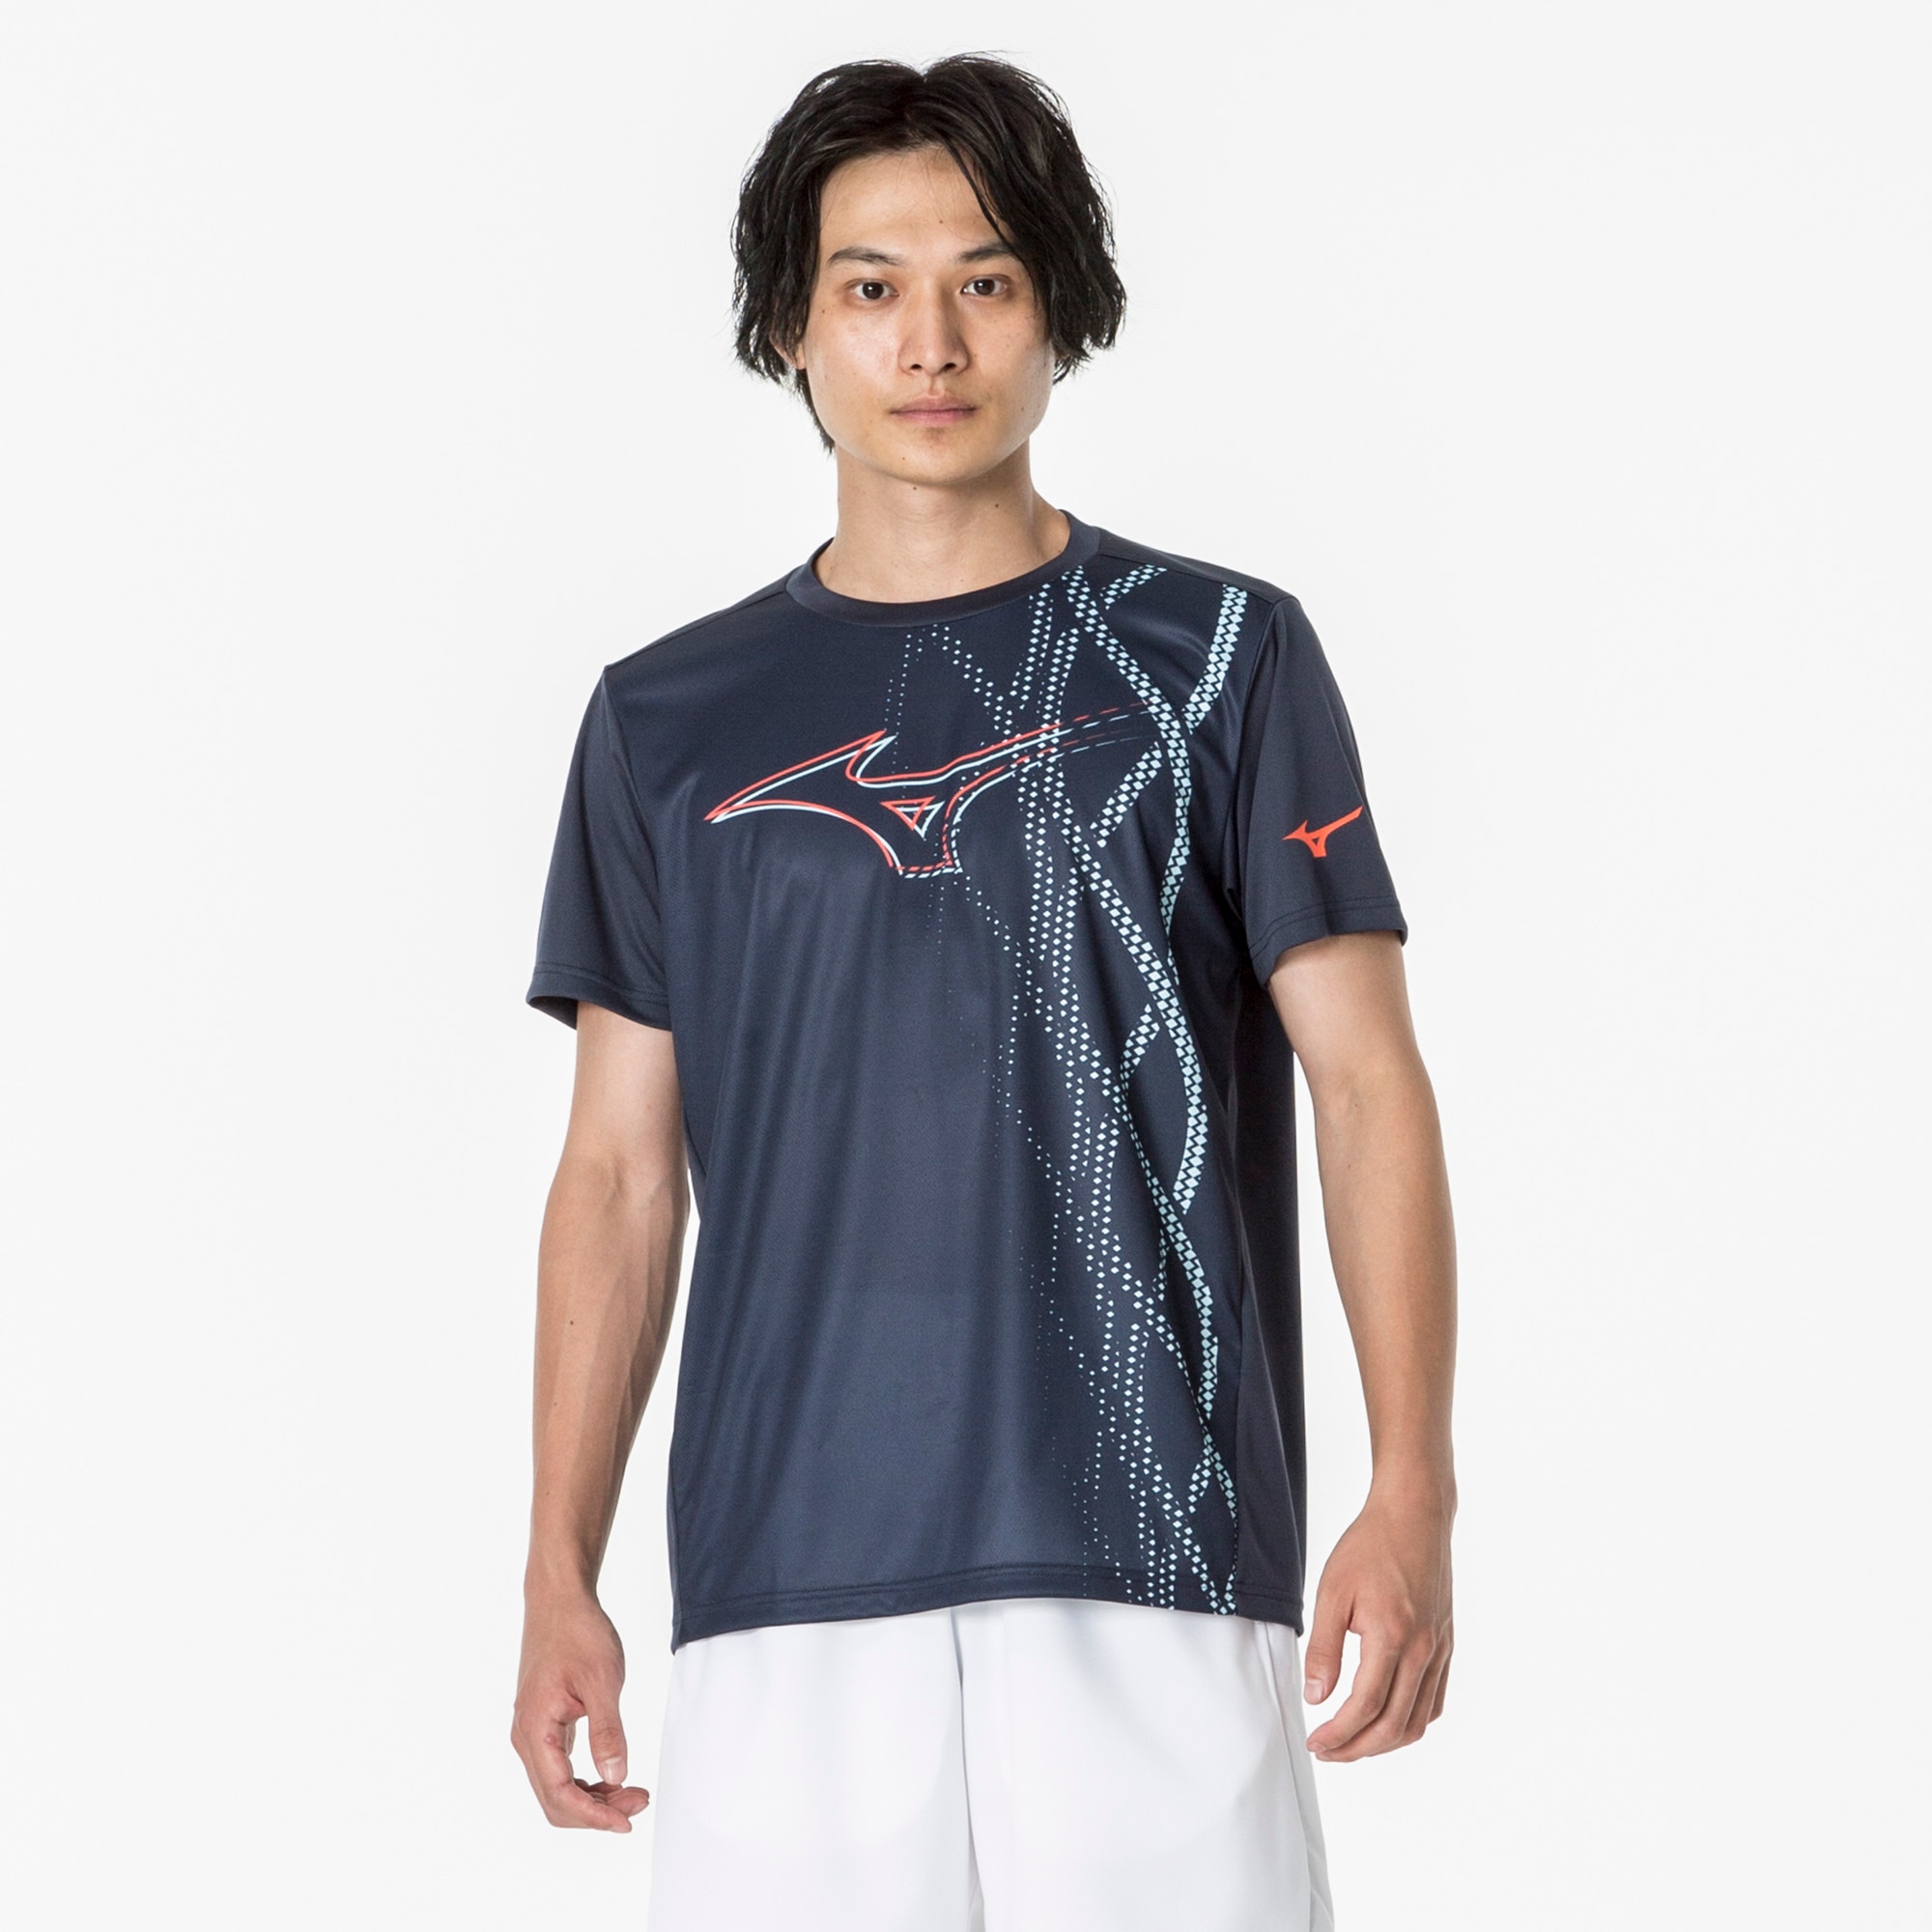 ENFORCE Tシャツ(ラケットスポーツ)[ユニセックス]|62JAA010|ウエア